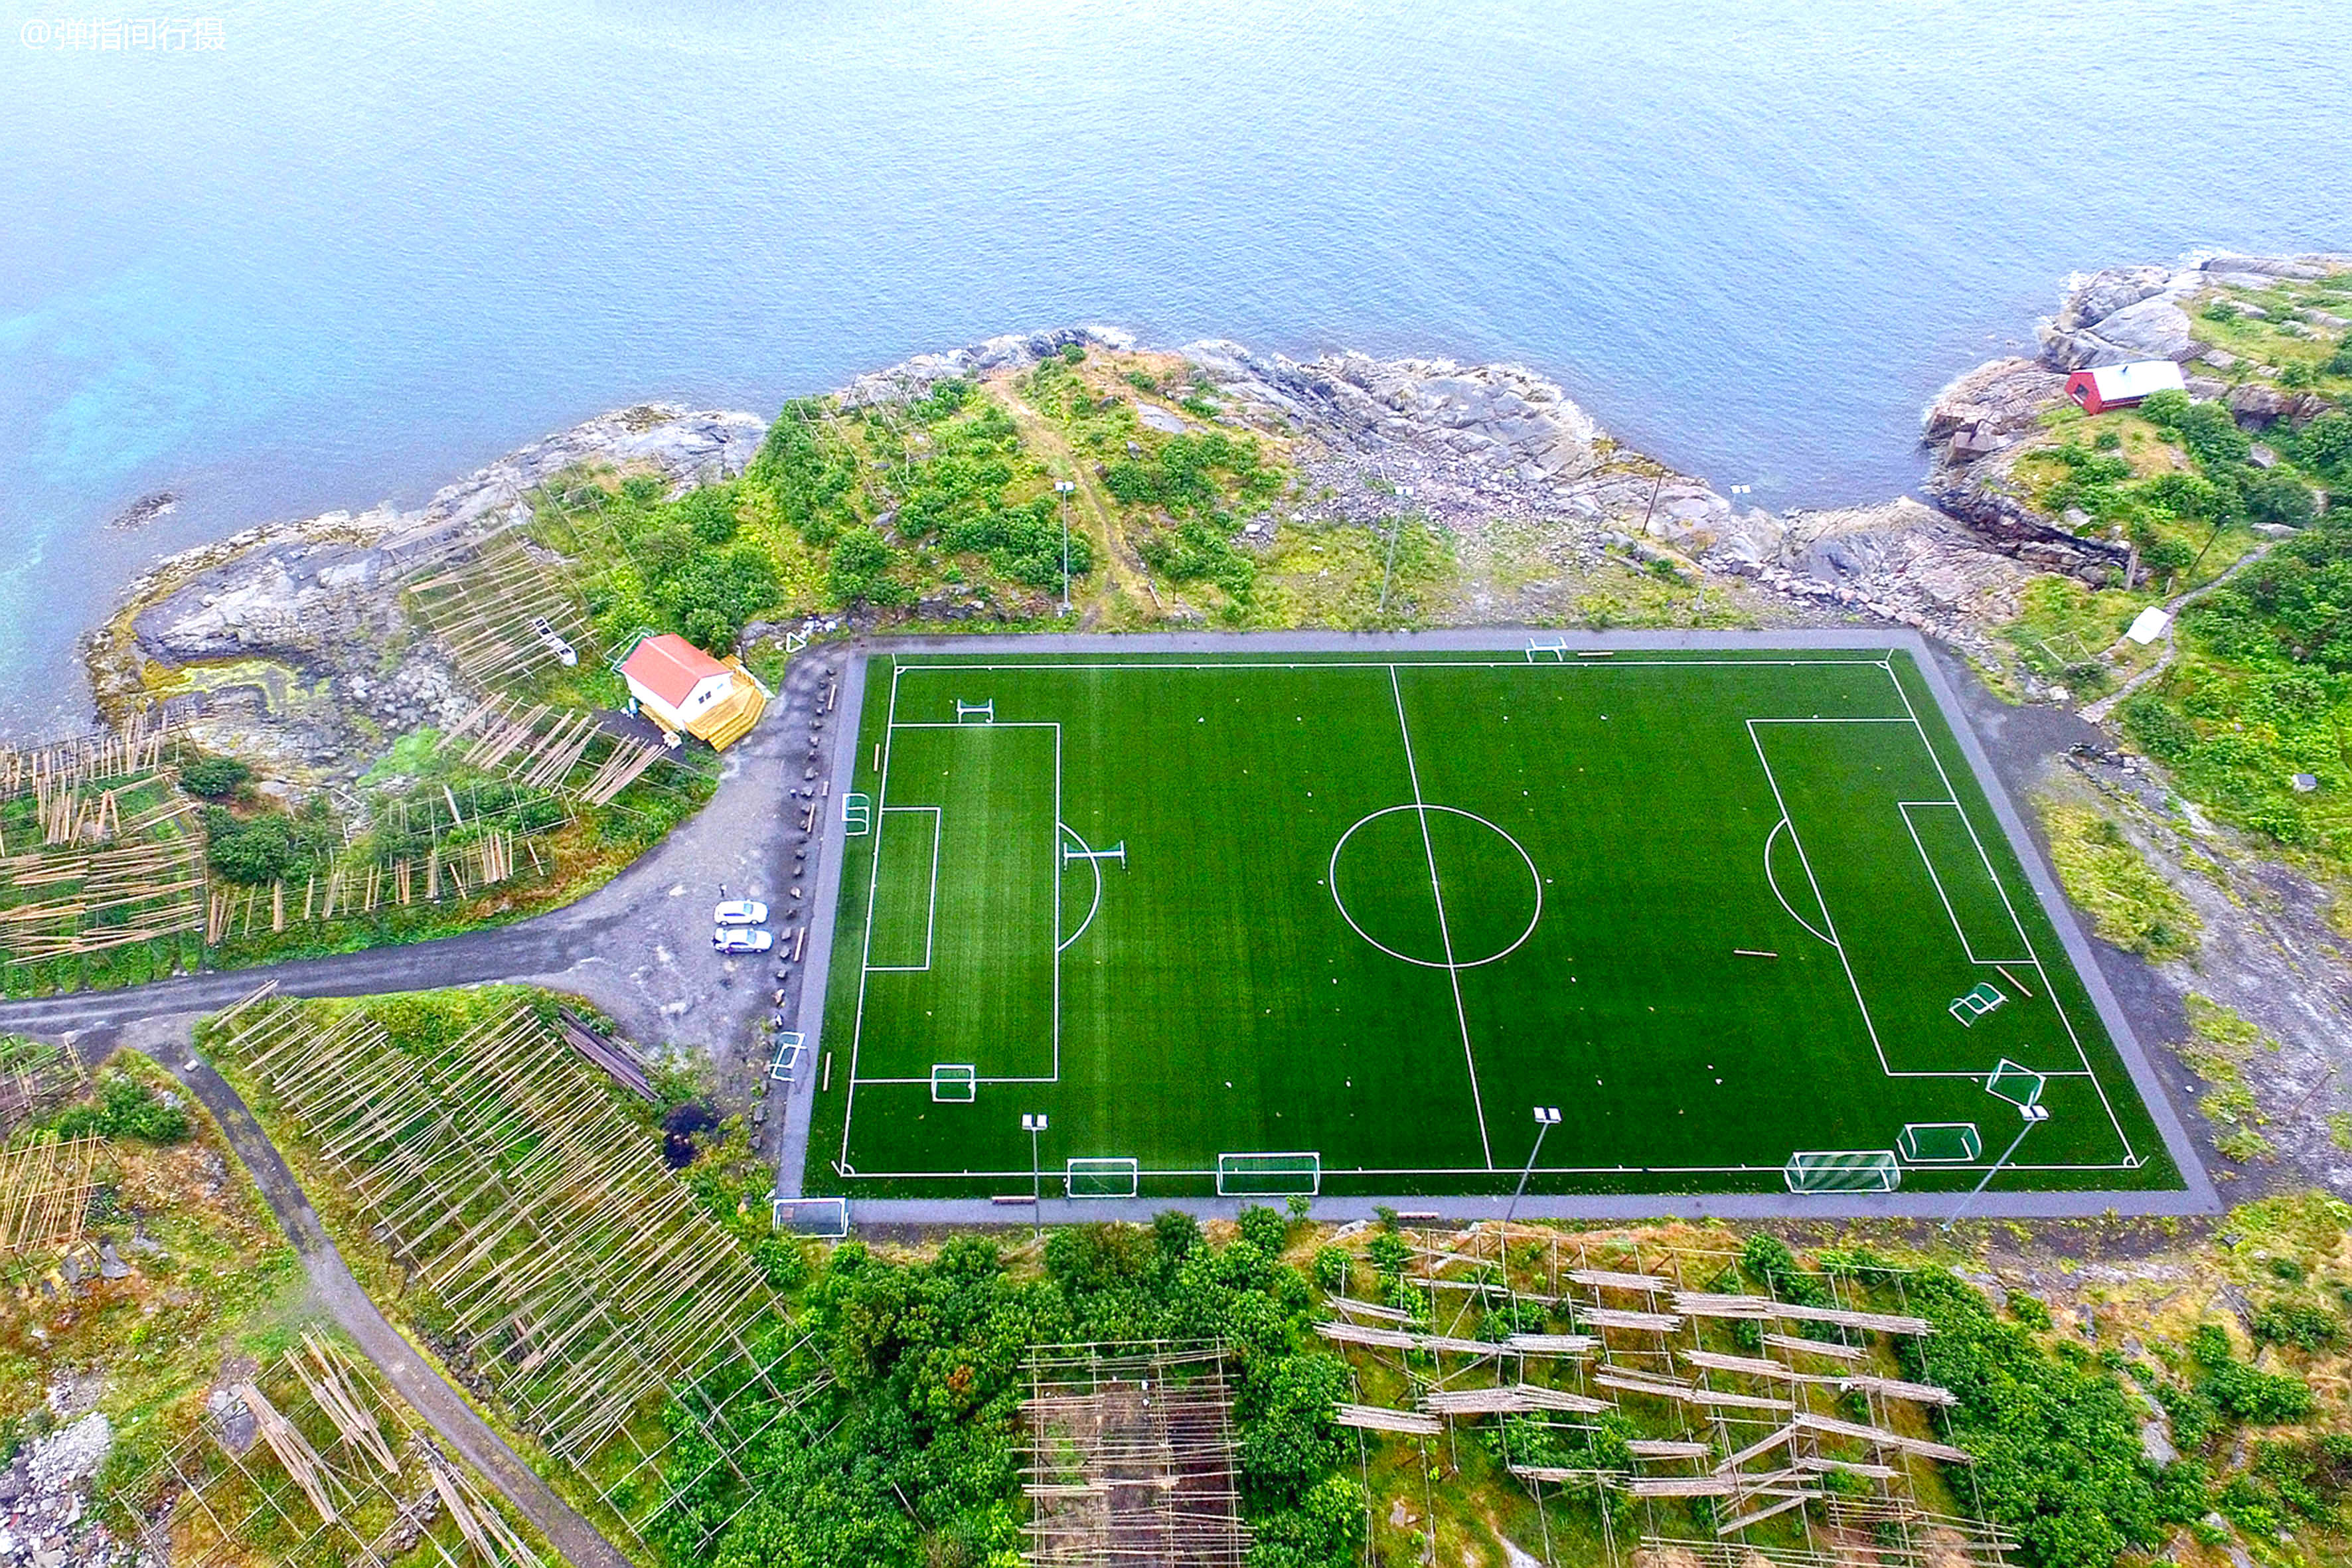 原创挪威有座绝美足球场建在北极圈里的小岛上俯瞰像外星人的造物